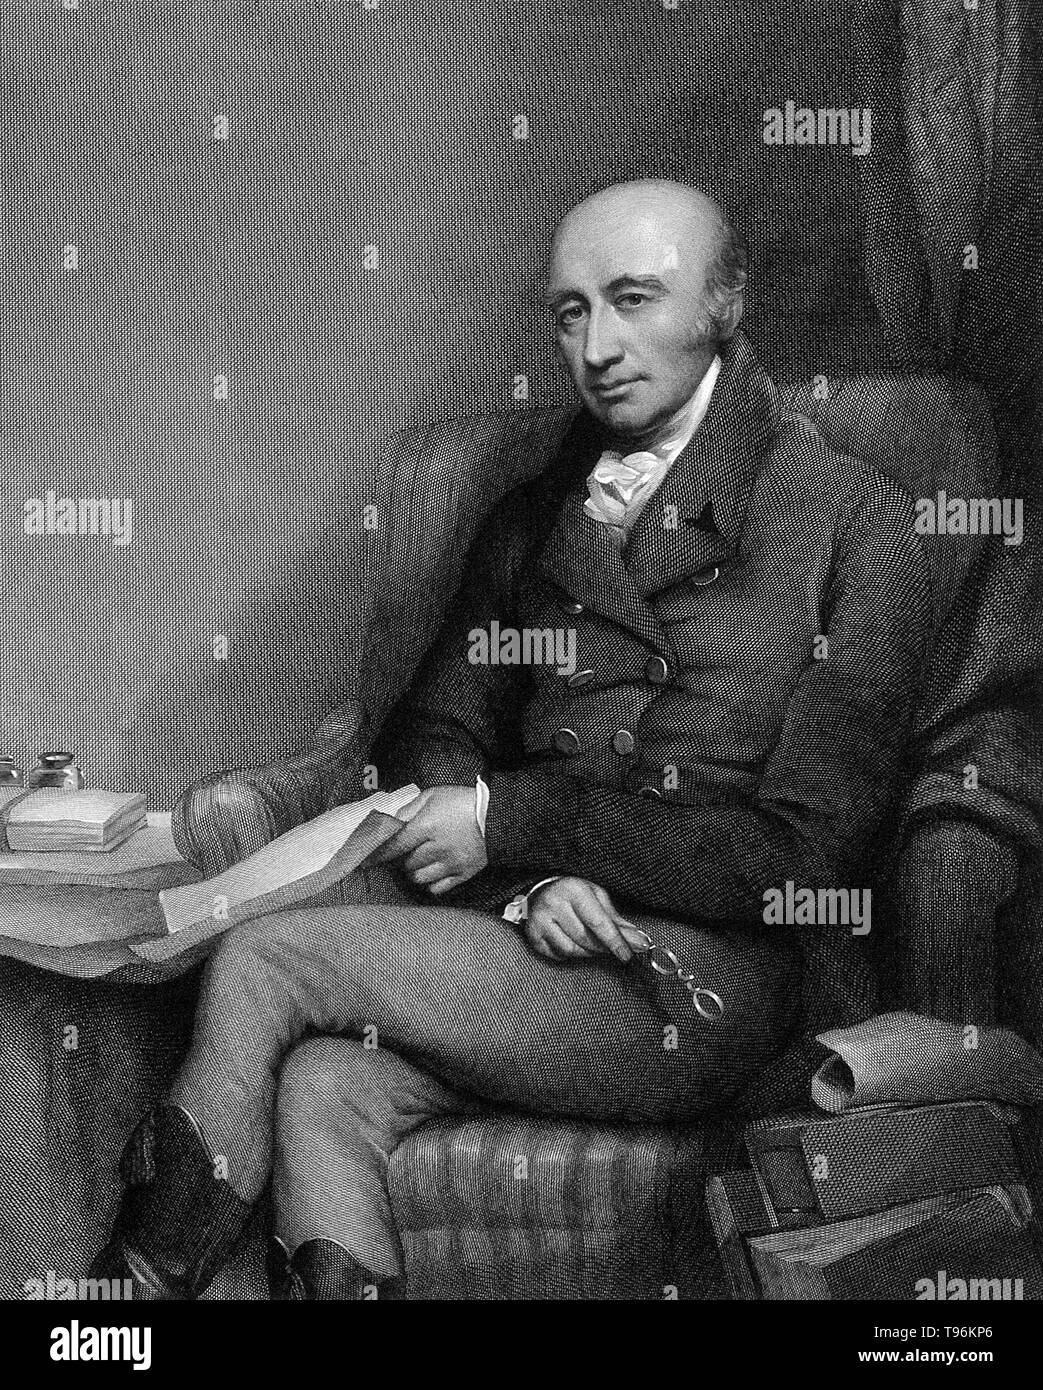 William Hyde Wollaston (Août 6, 1766 - décembre 22, 1828) était un chimiste et physicien anglais. En 1793, William a obtenu un doctorat en médecine de l'Université de Cambridge et a été membre de son collège de 1787 à 1828. Au cours de ses études, il s'est intéressé à la chimie, cristallographie, la métallurgie et la physique. Le minéral la wollastonite est nommé d'après lui. Banque D'Images